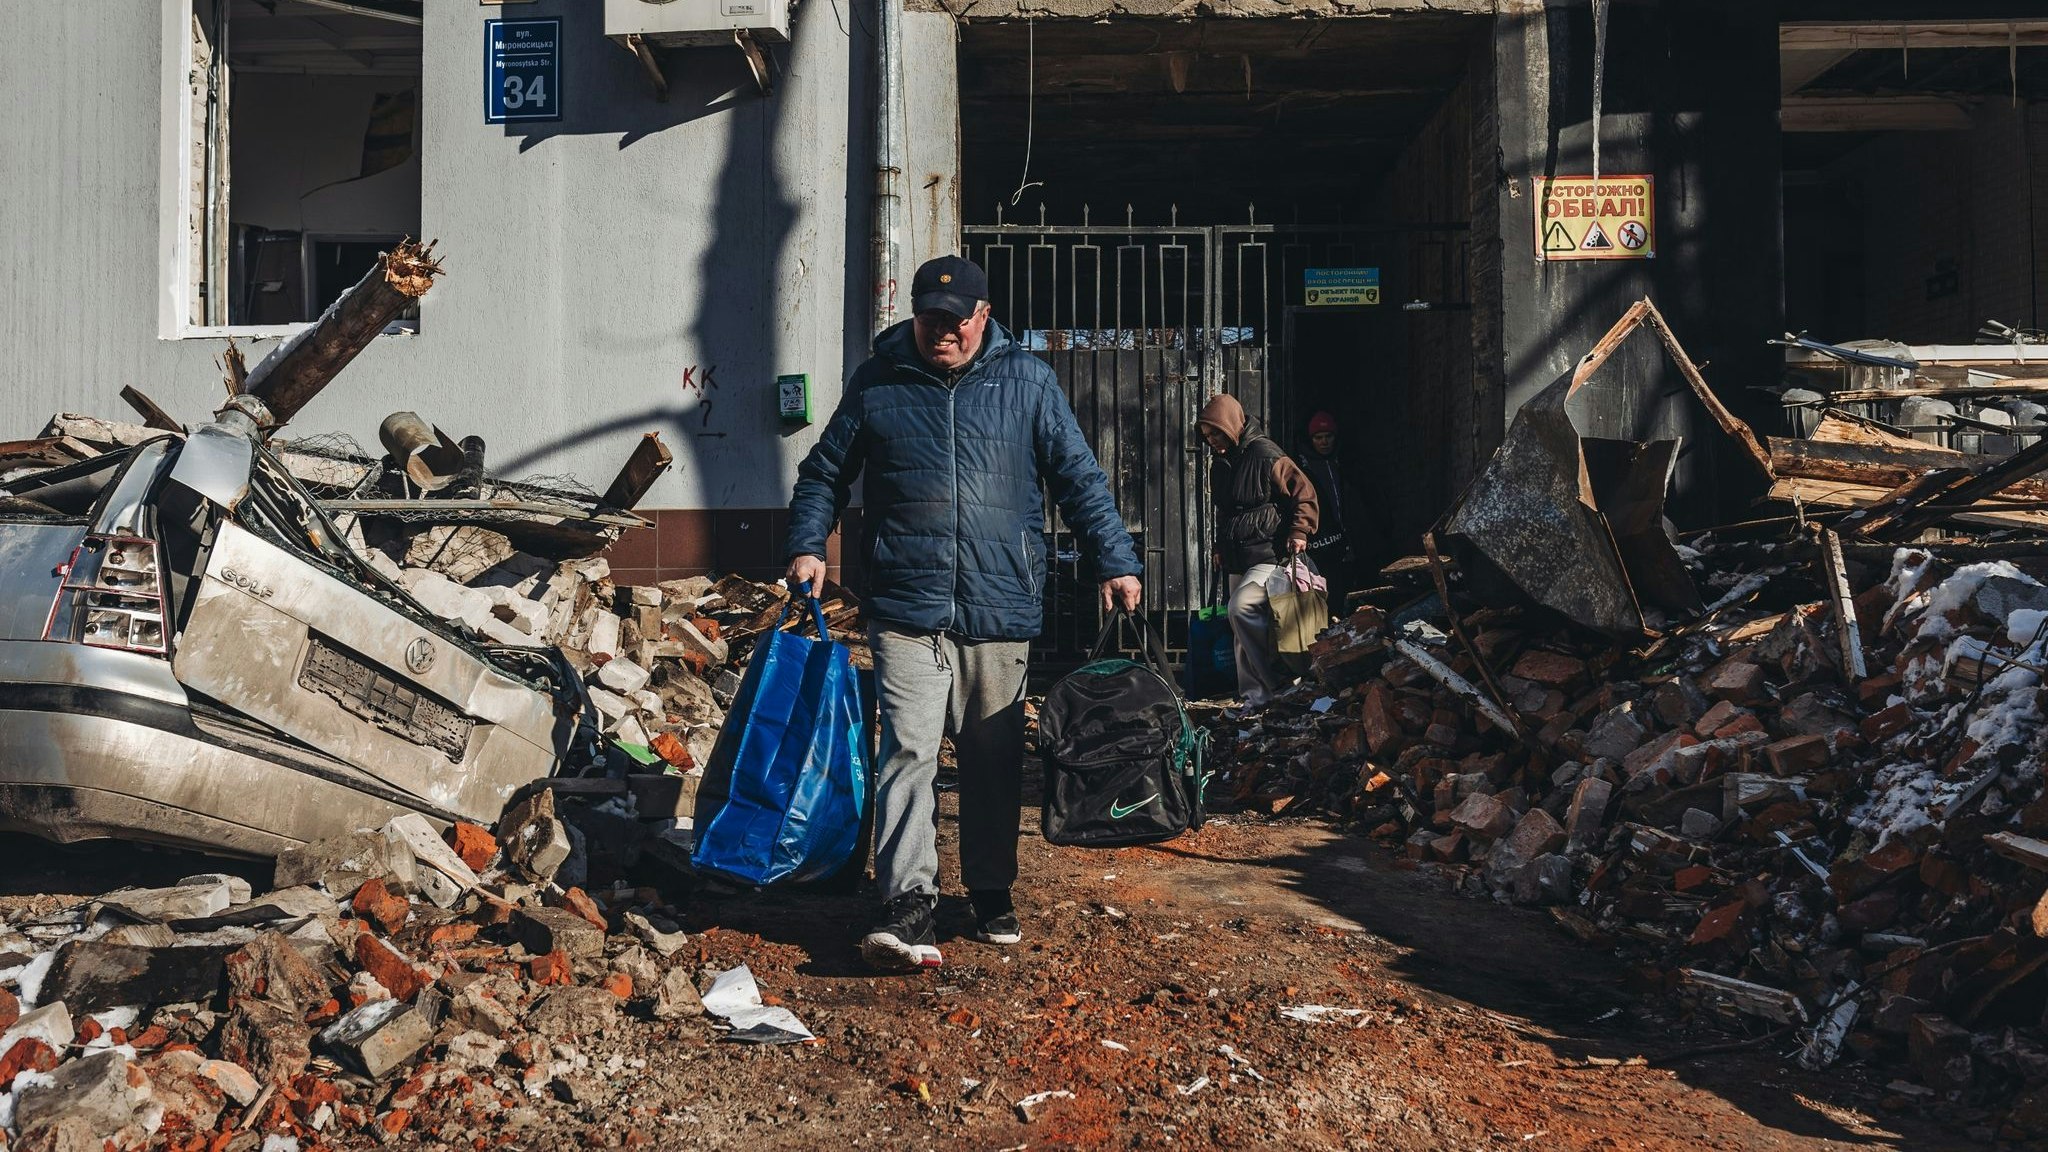 Kaum noch was übrig: Ein Mann trägt seine Habseligkeiten aus seinem zerstörten Haus in Charkow. Foto: dpa/Herrera